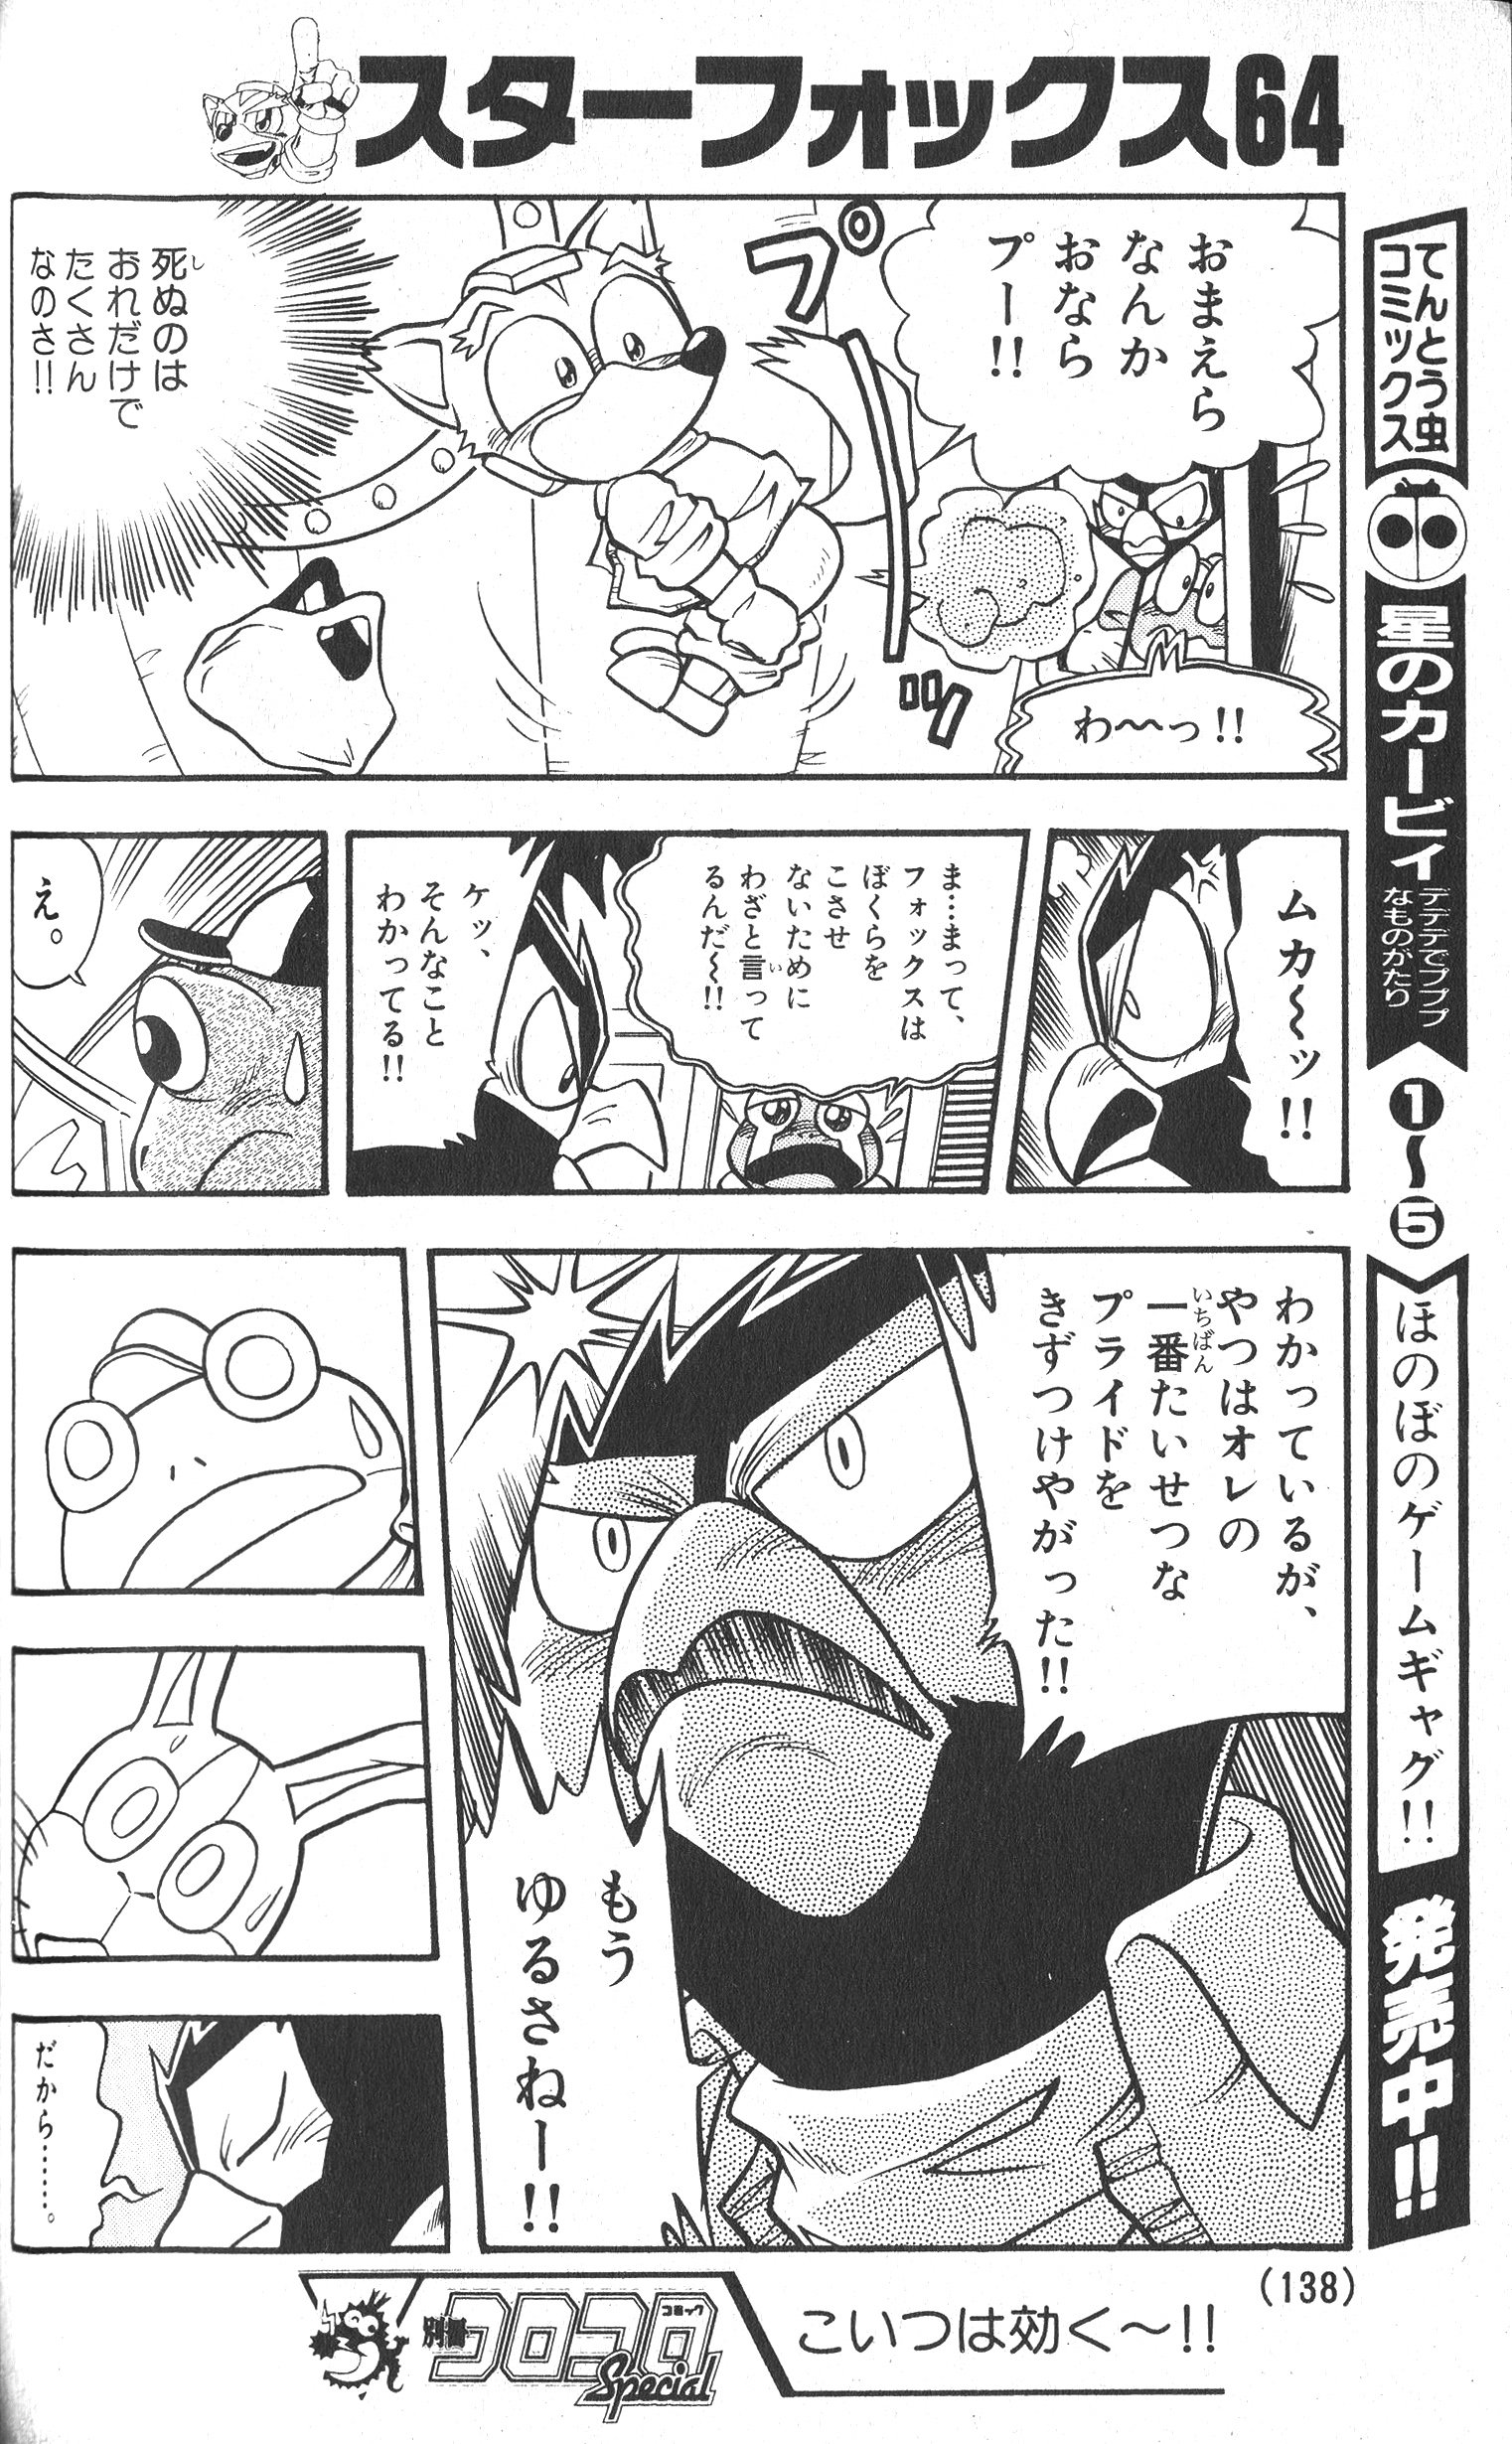 Twitter 上的 Togepi1125 やましたたかひろ先生のスタフォコミック 別冊コロコロ97年4月号から Star Fox Comic By Takahiro Yamashita From Bessatsu Corocoro Comic April 1997 T Co 7iefxlh3xk Twitter